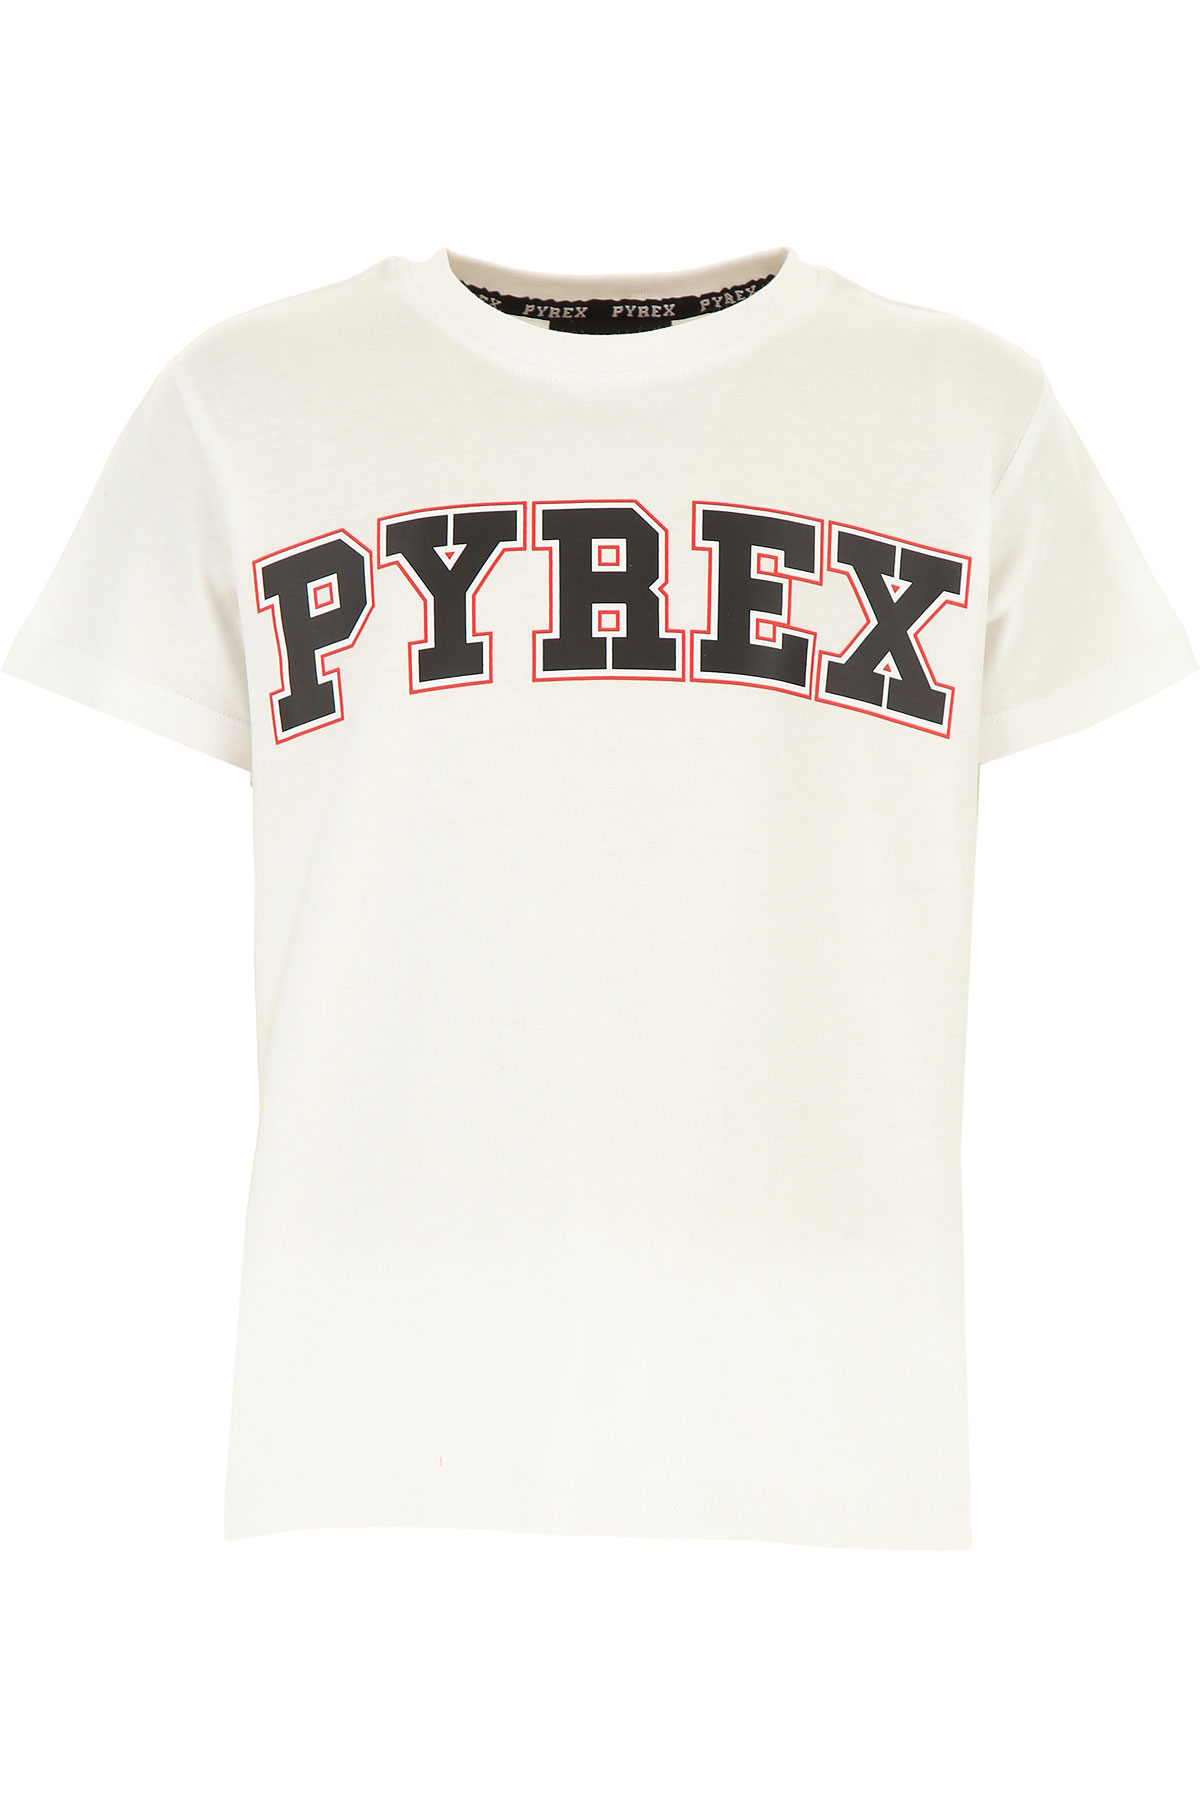 Pyrex Kinder T-Shirt für Jungen Günstig im Sale, Weiss, Baumwolle, 2017, L M S XL XS XXL (16 Y)